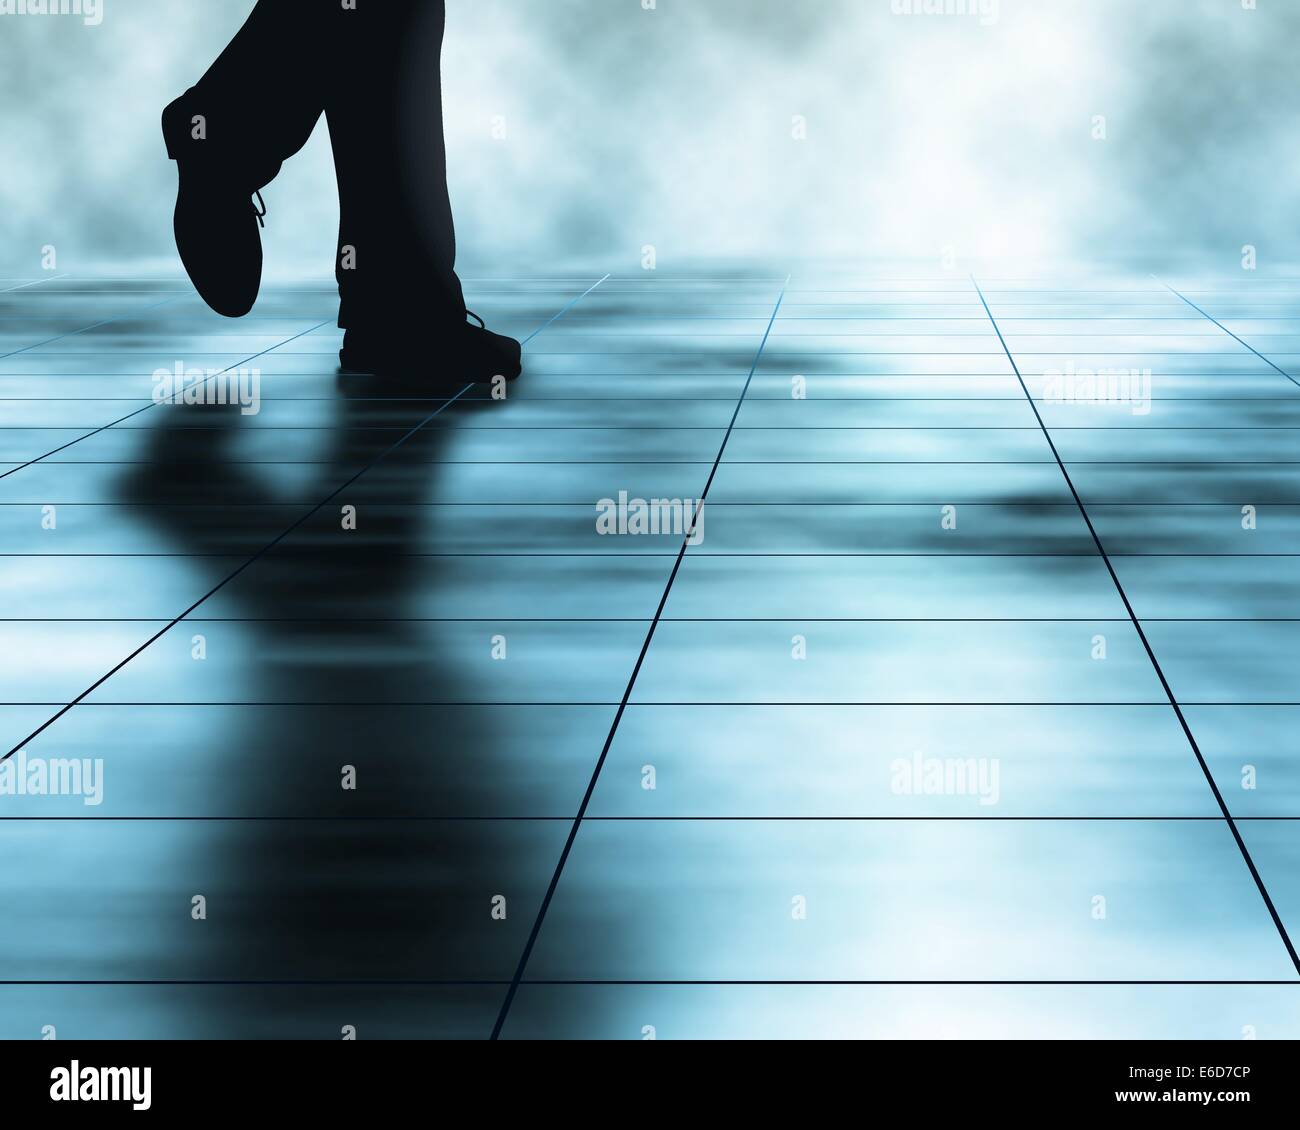 Bearbeitbares Vektor-Illustration eines Mannes zu Fuß über einen Fliesenboden mit einem Verlaufsgitter hergestellt Stock Vektor